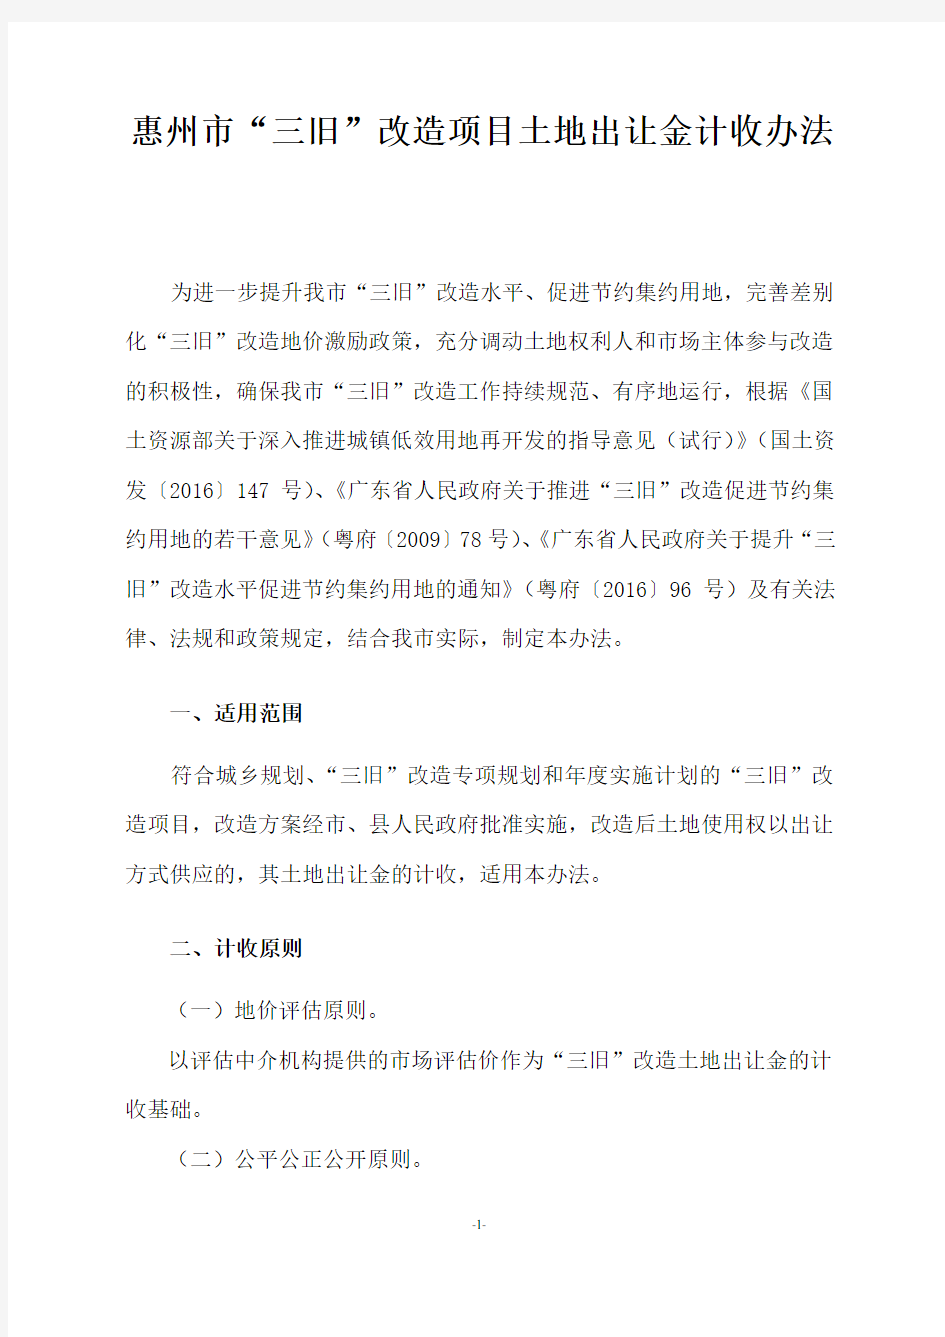 01惠州市“三旧”改造项目土地出让金计收办法(讨论稿)-房地产-2019